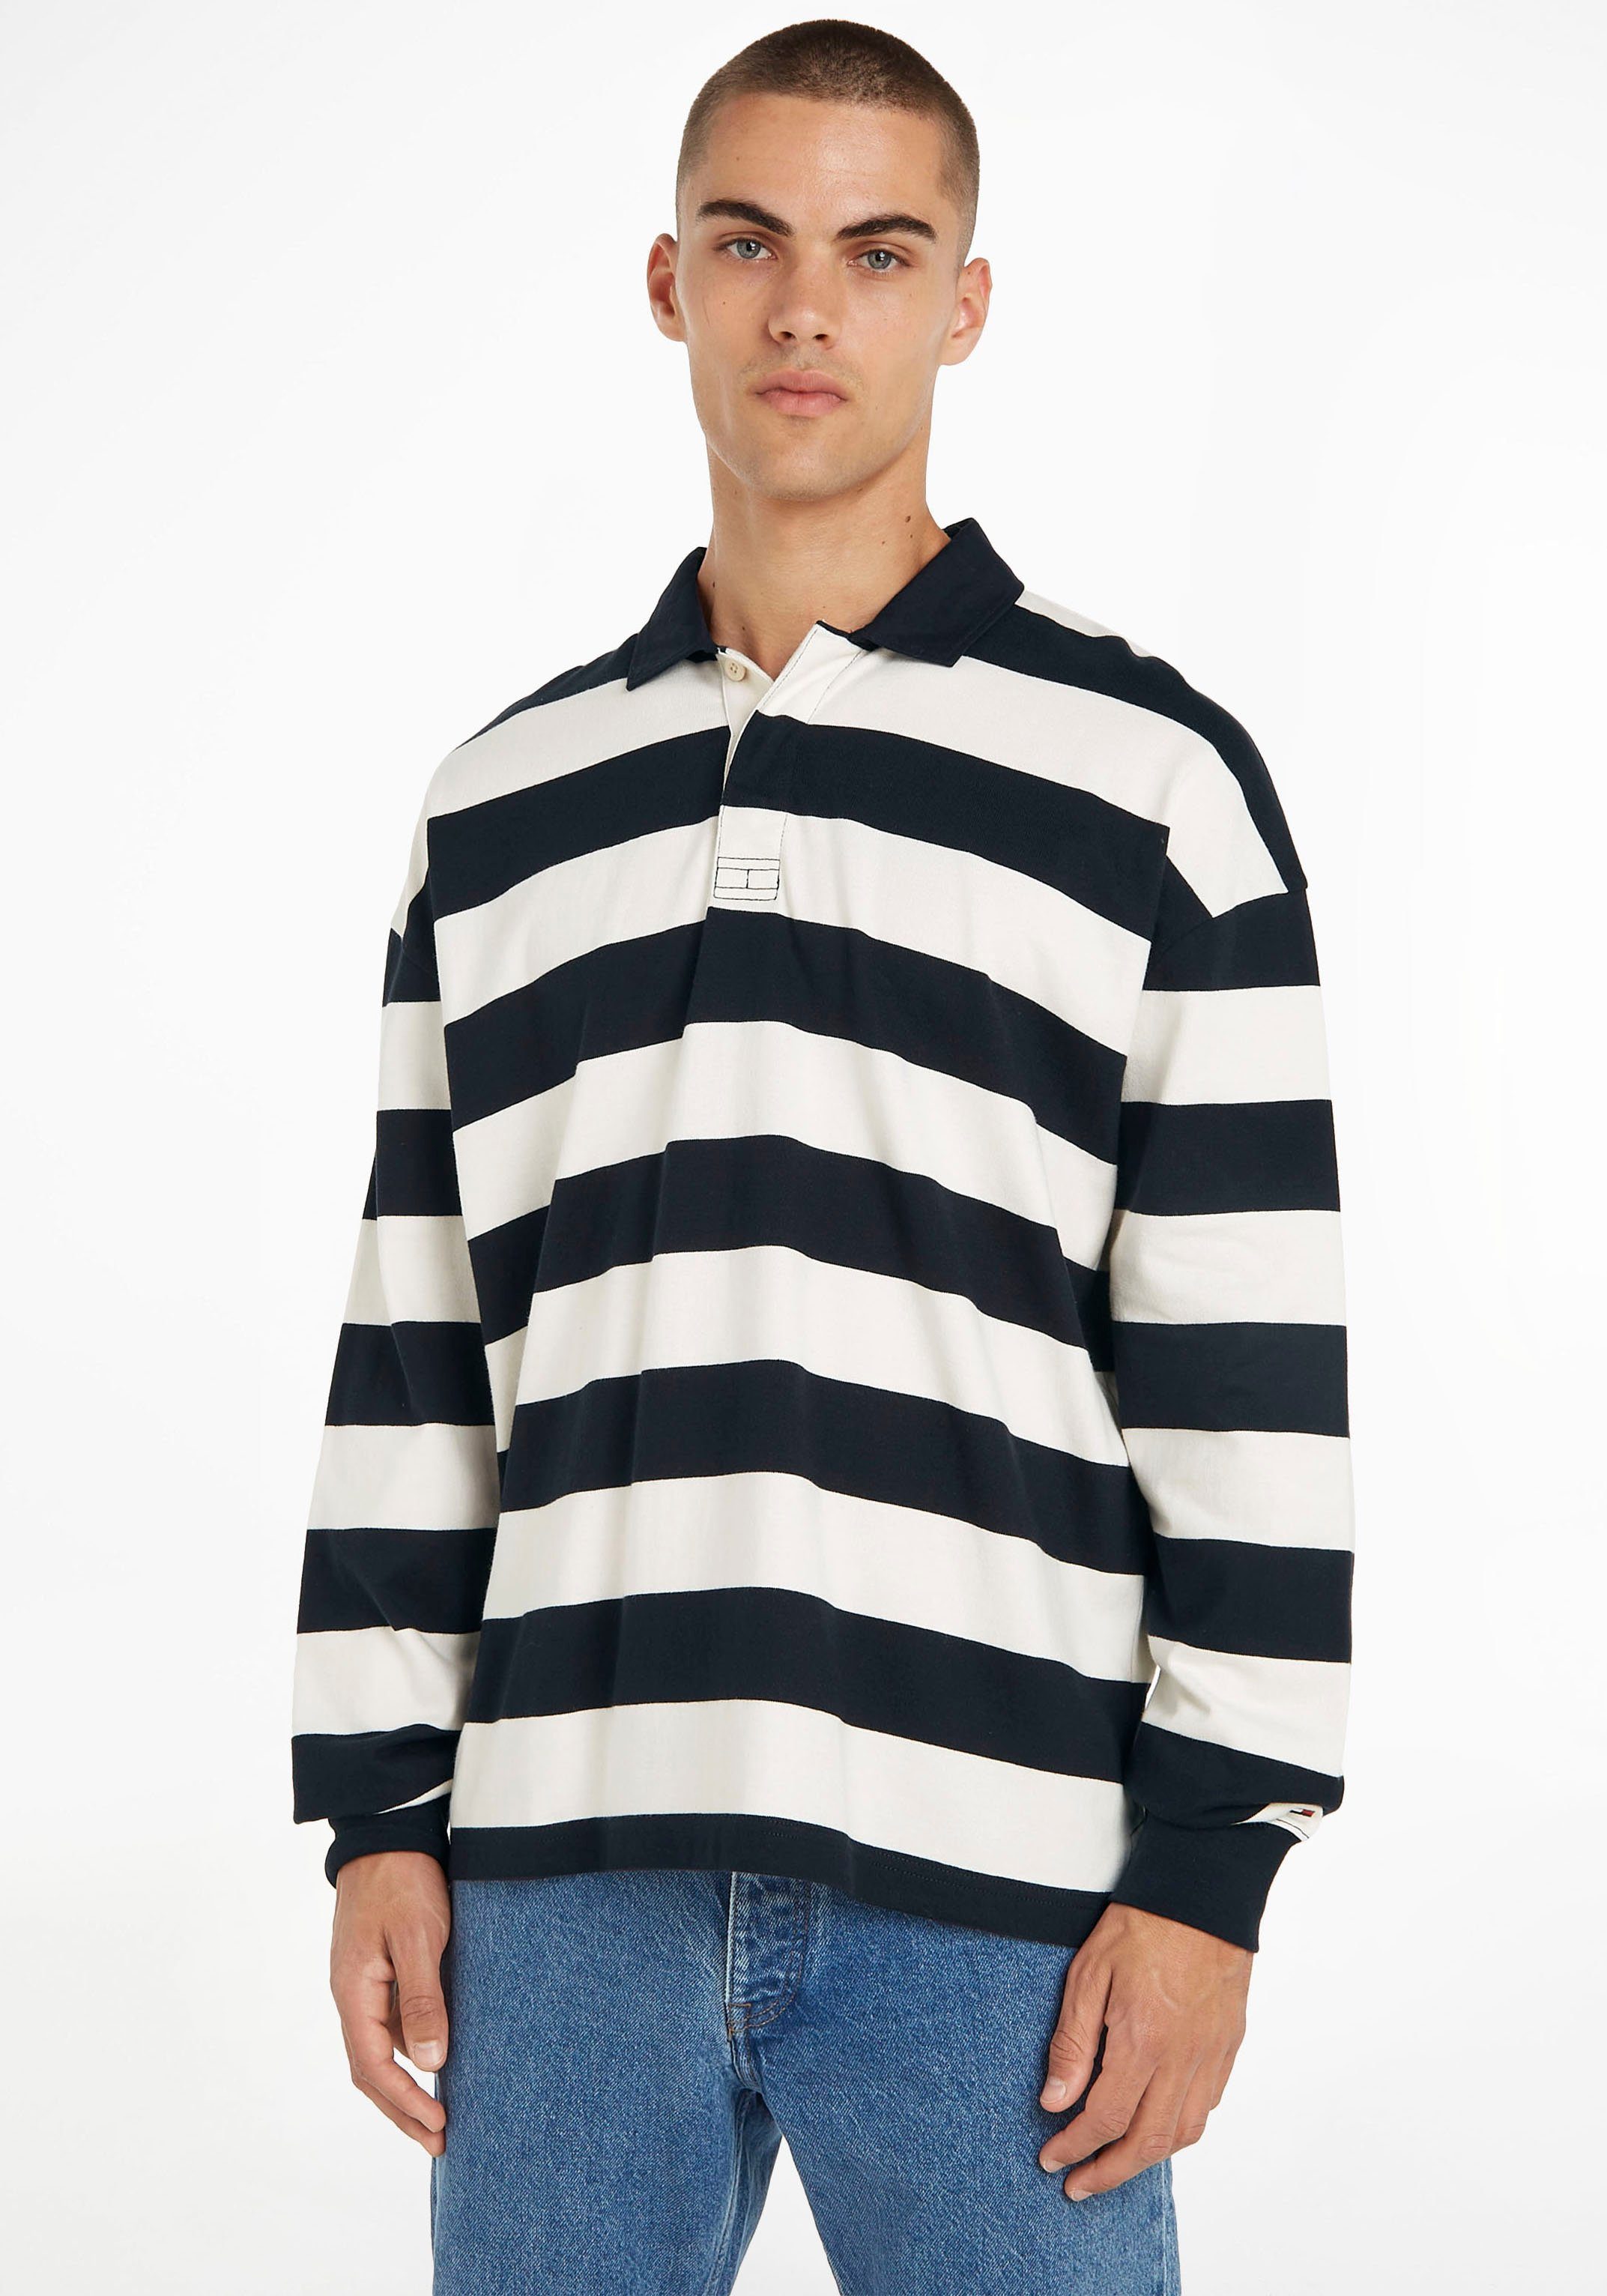 Ecru/Desert Hilfiger RUGBY im STRIPED Streifendesign BLOCK Sweater Tommy Sky